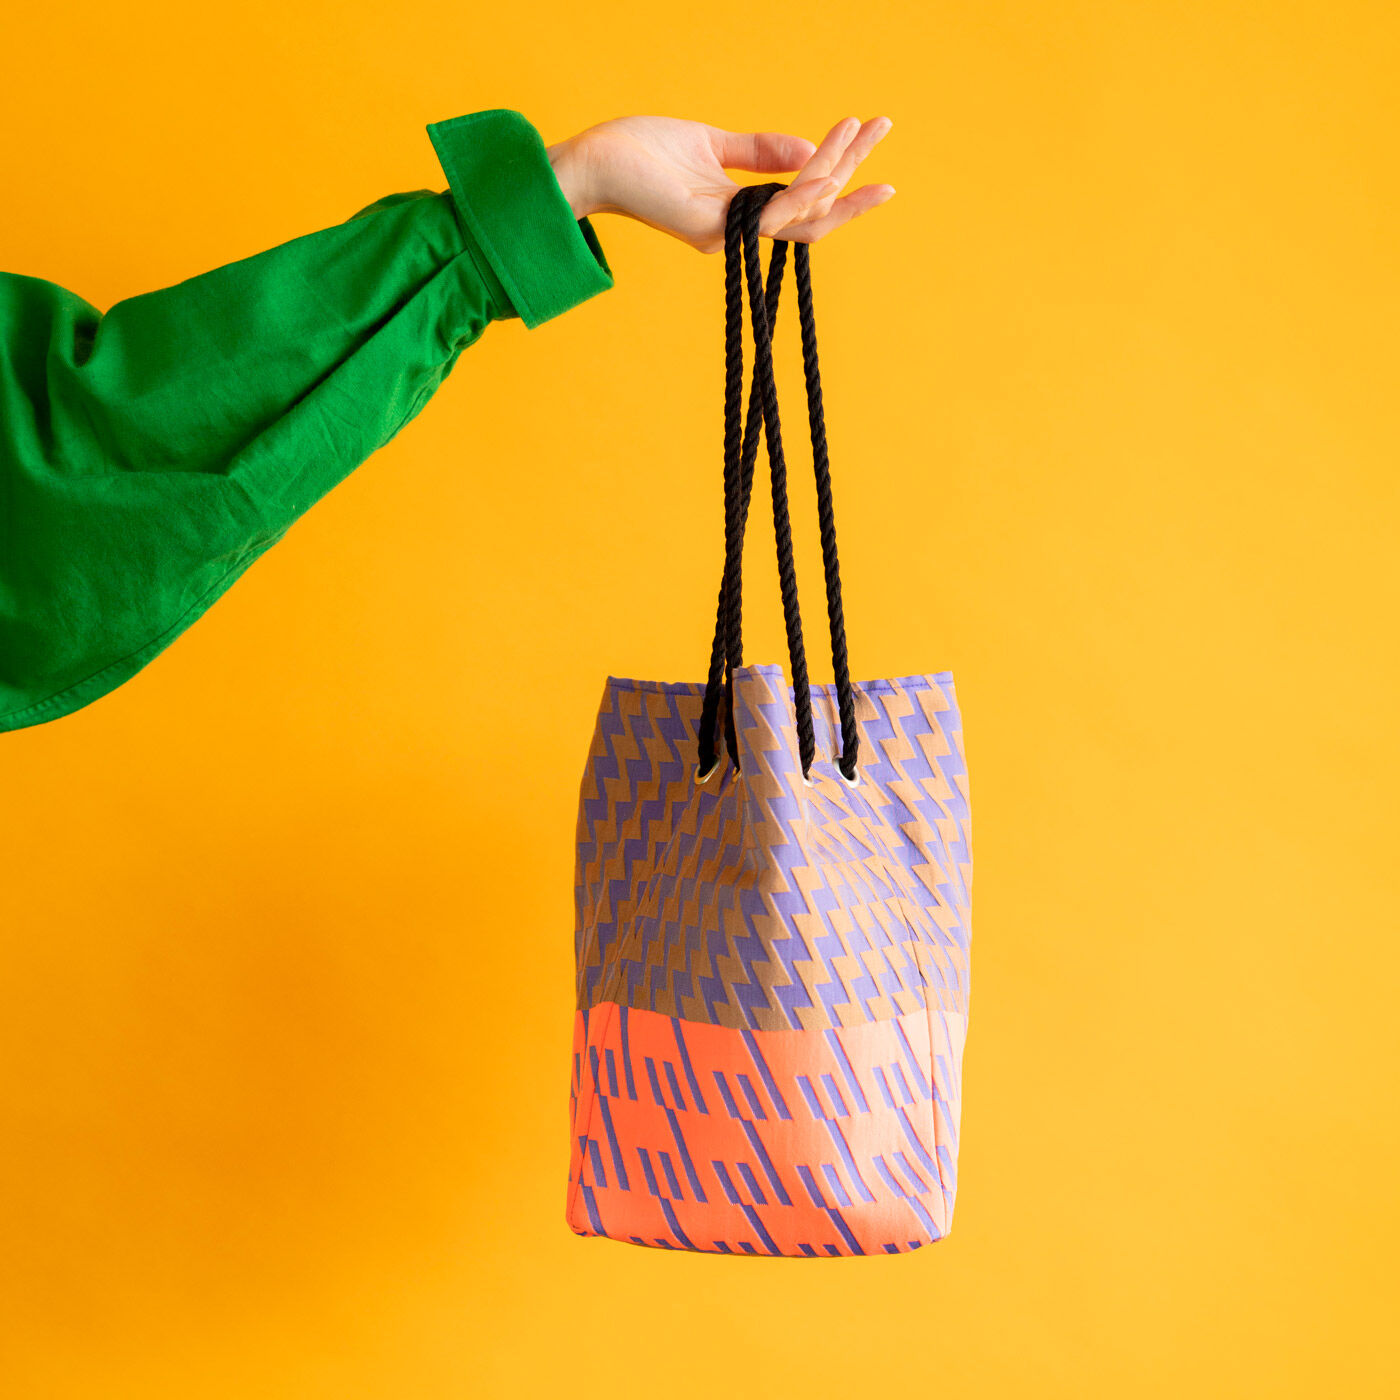 ＆Stories|テキスタイルデザイナーと作った 播州織のダズリングバッグ〈サンセット〉|使用しているジャカード織は、テキスタイルデザイナー・梶原加奈子さんによる稲妻をイメージしたデザイン。パープル×オレンジの配色で夕暮れ時をイメージする〈サンセット〉。